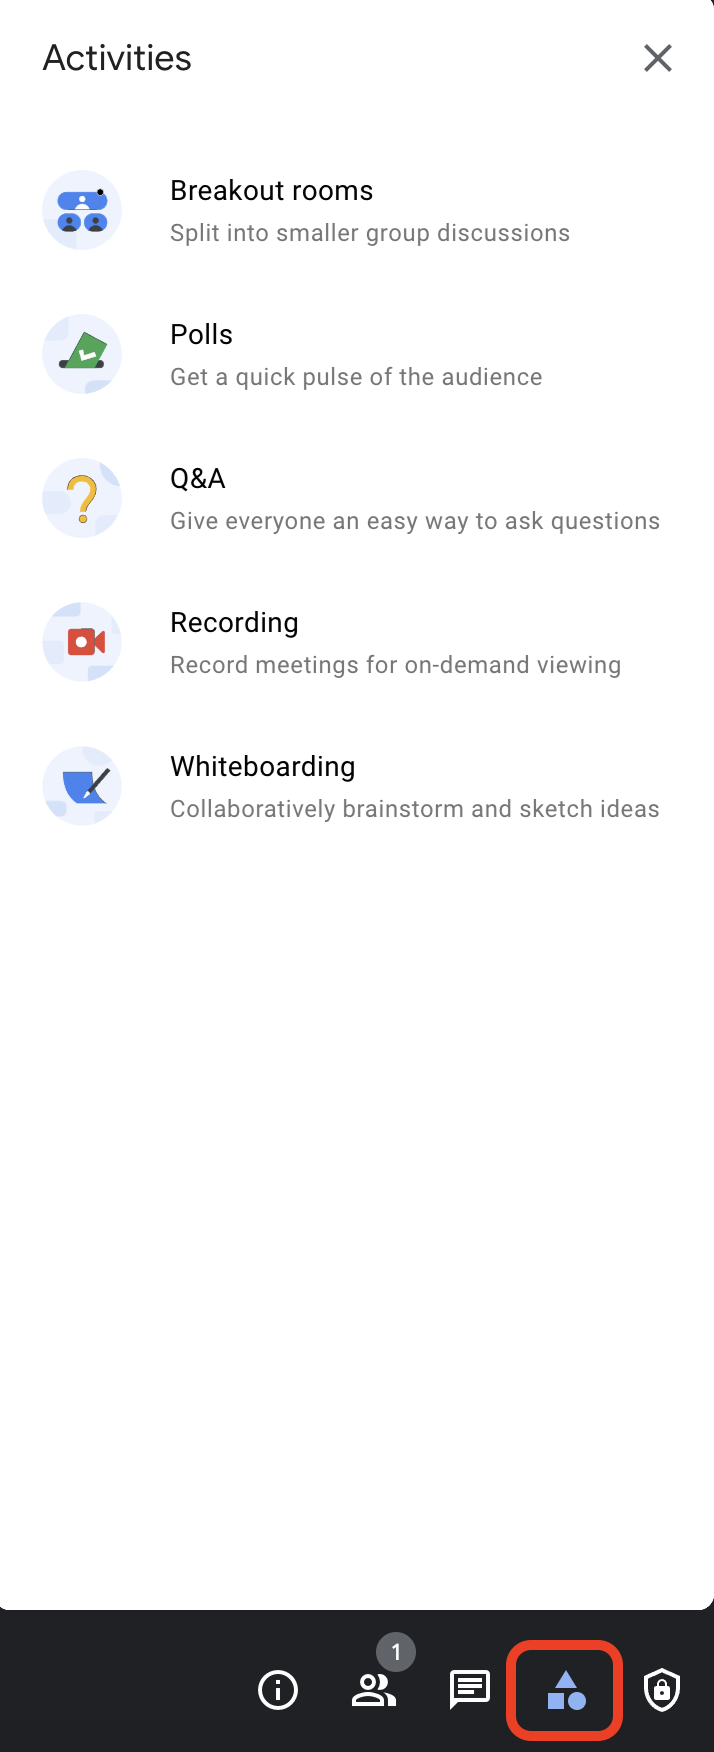 Activities box in Google Meet